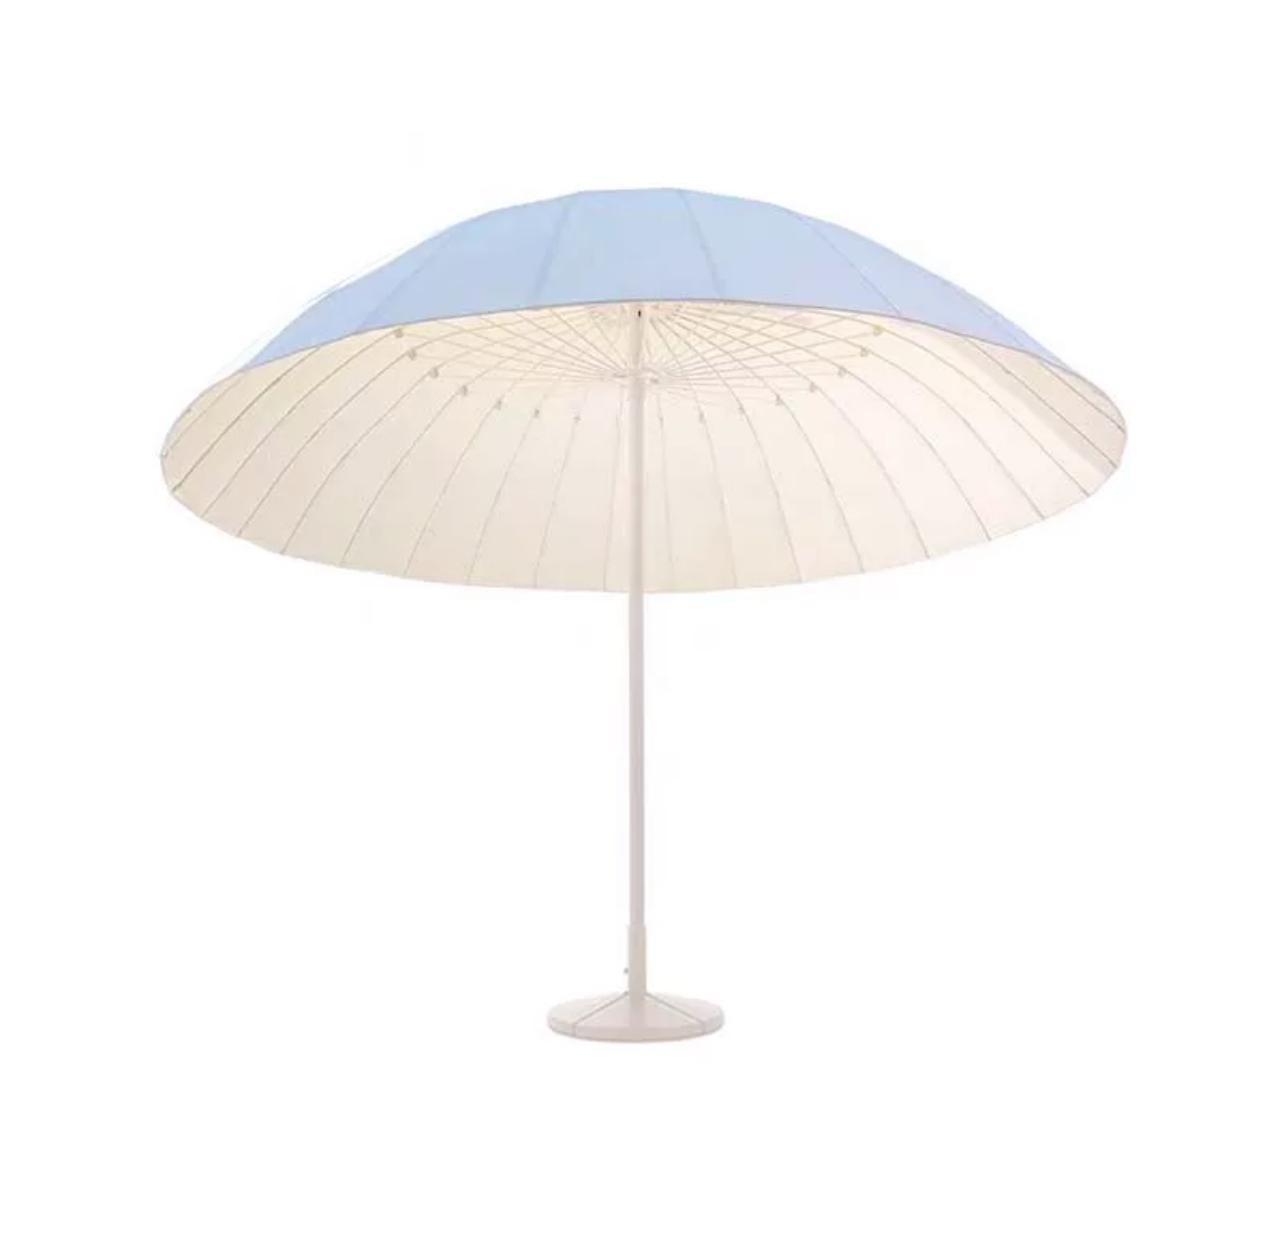 創意設計戶外太陽傘